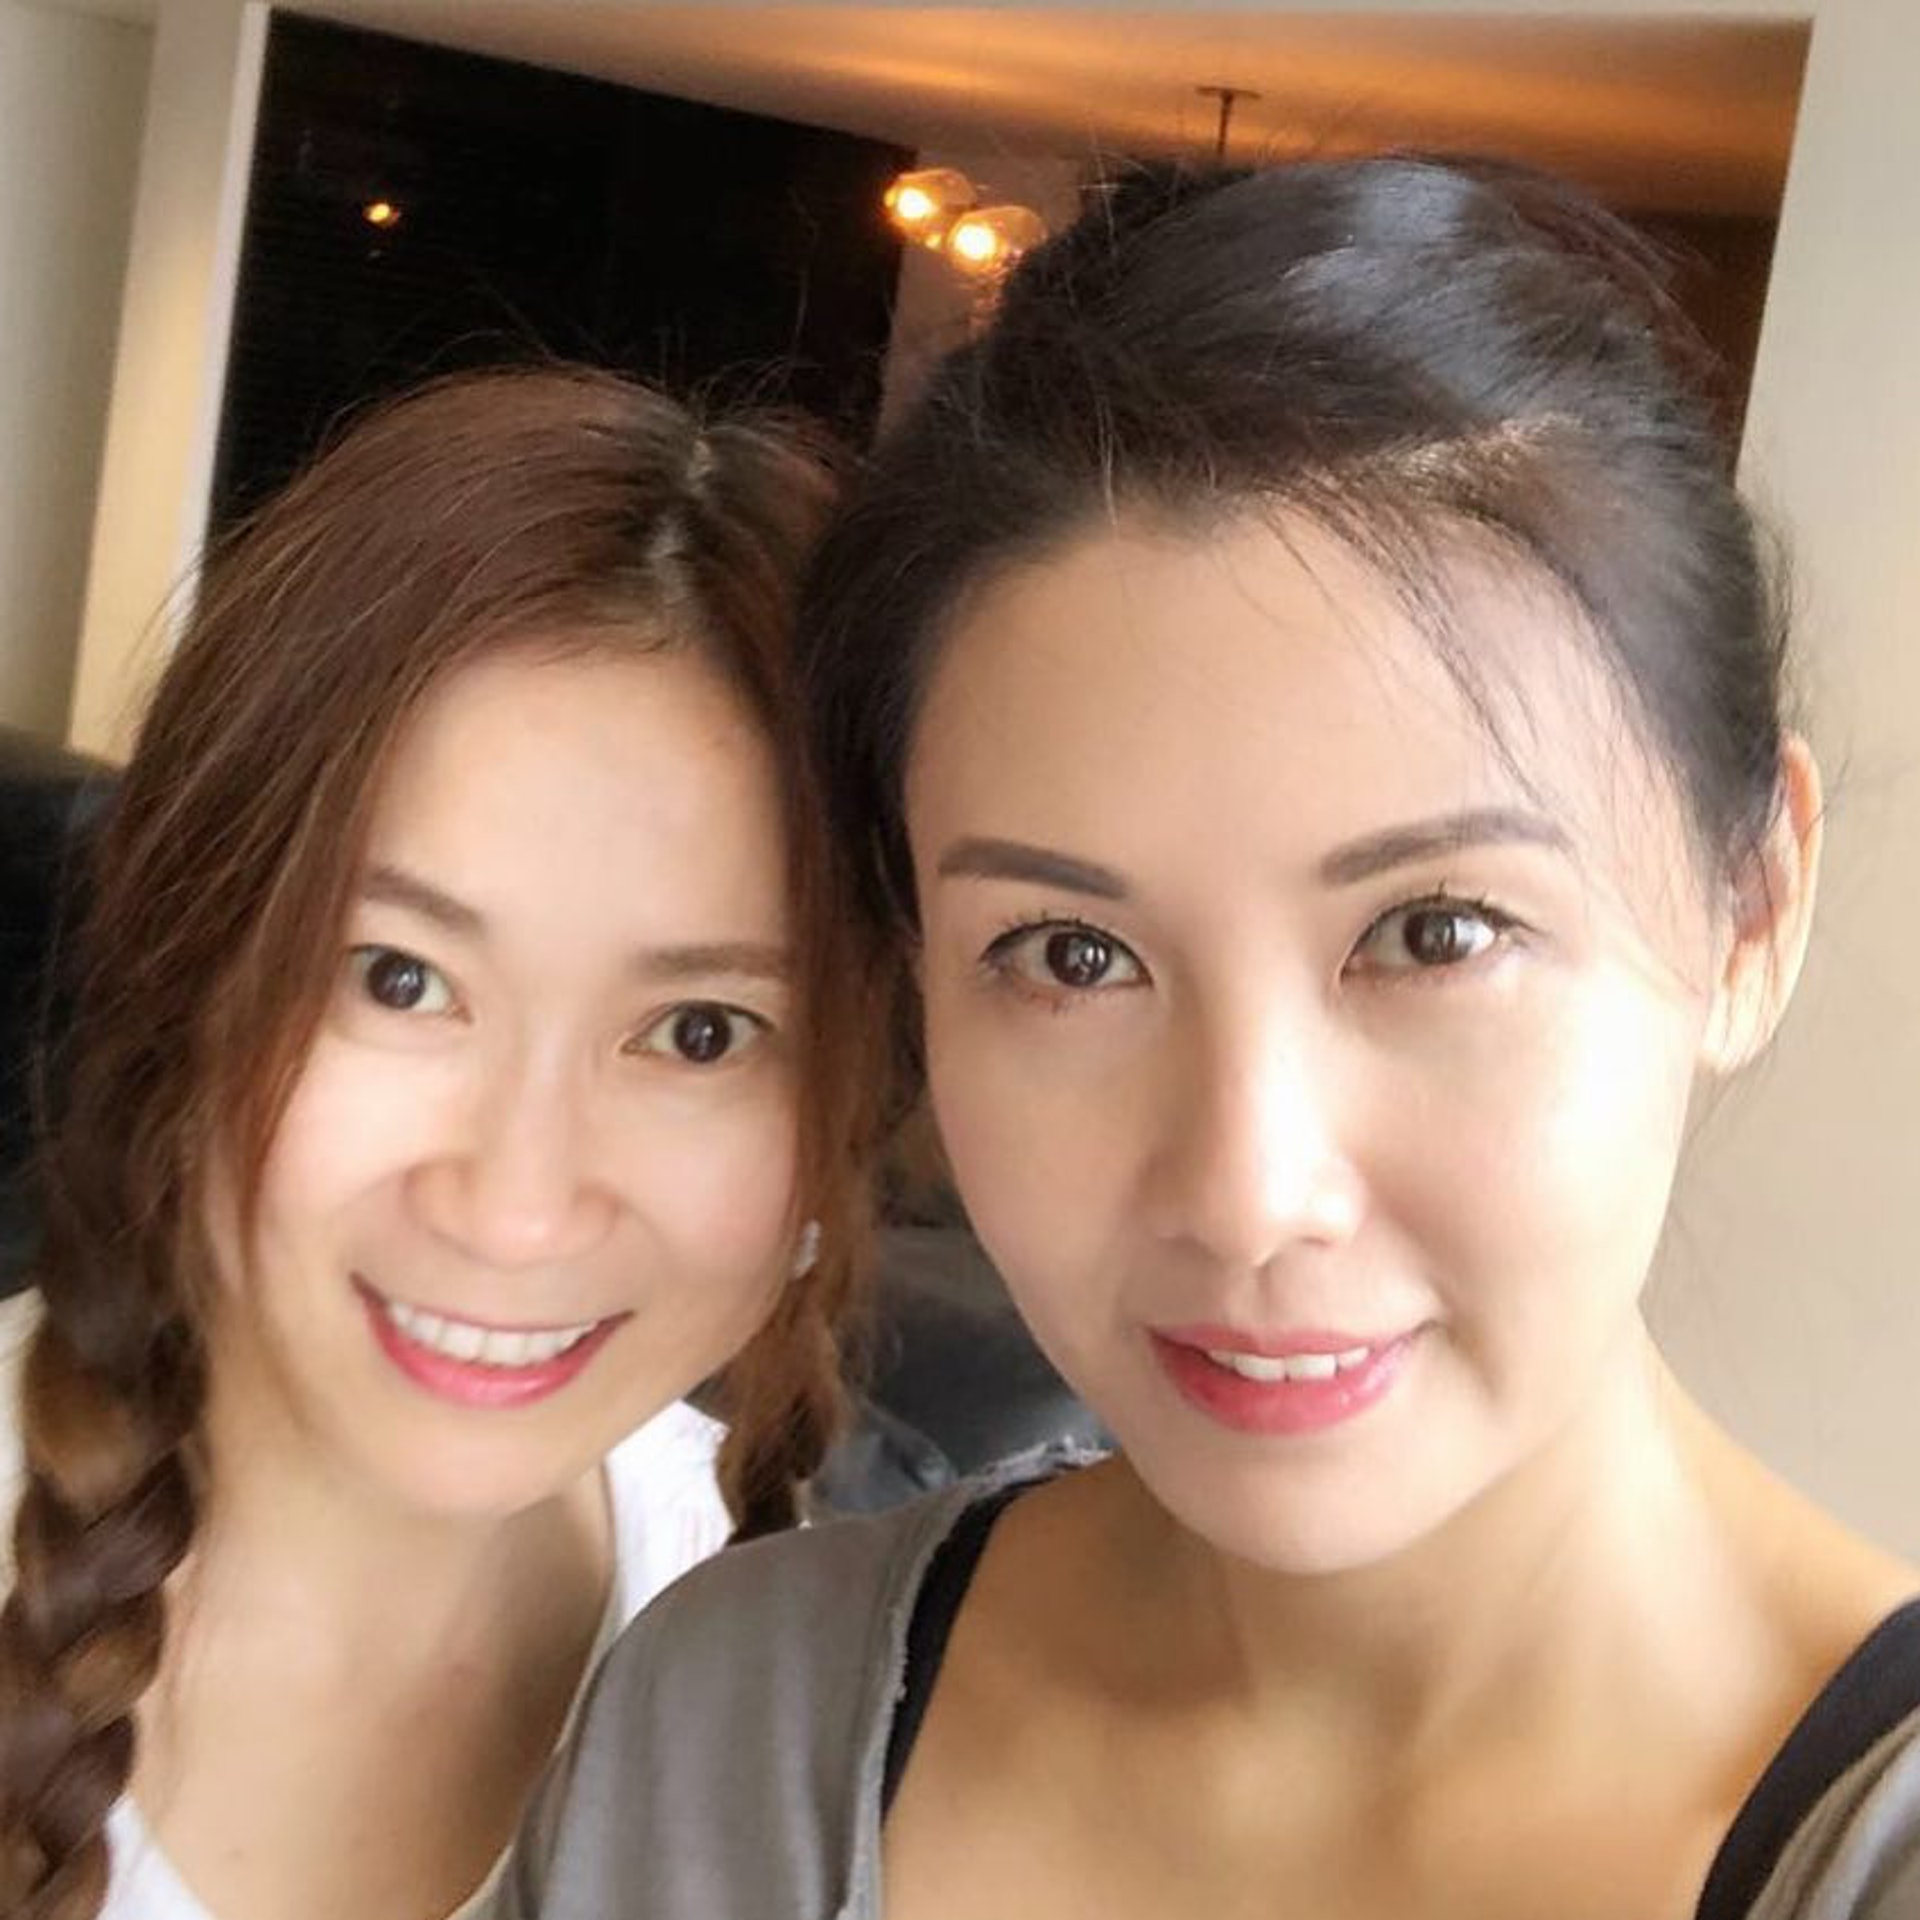 Người tình màn ảnh của Châu Tinh Trì 54 tuổi vẫn trẻ đẹp như ngoài 30 nhờ 8 loại thực phẩm - Ảnh 1.